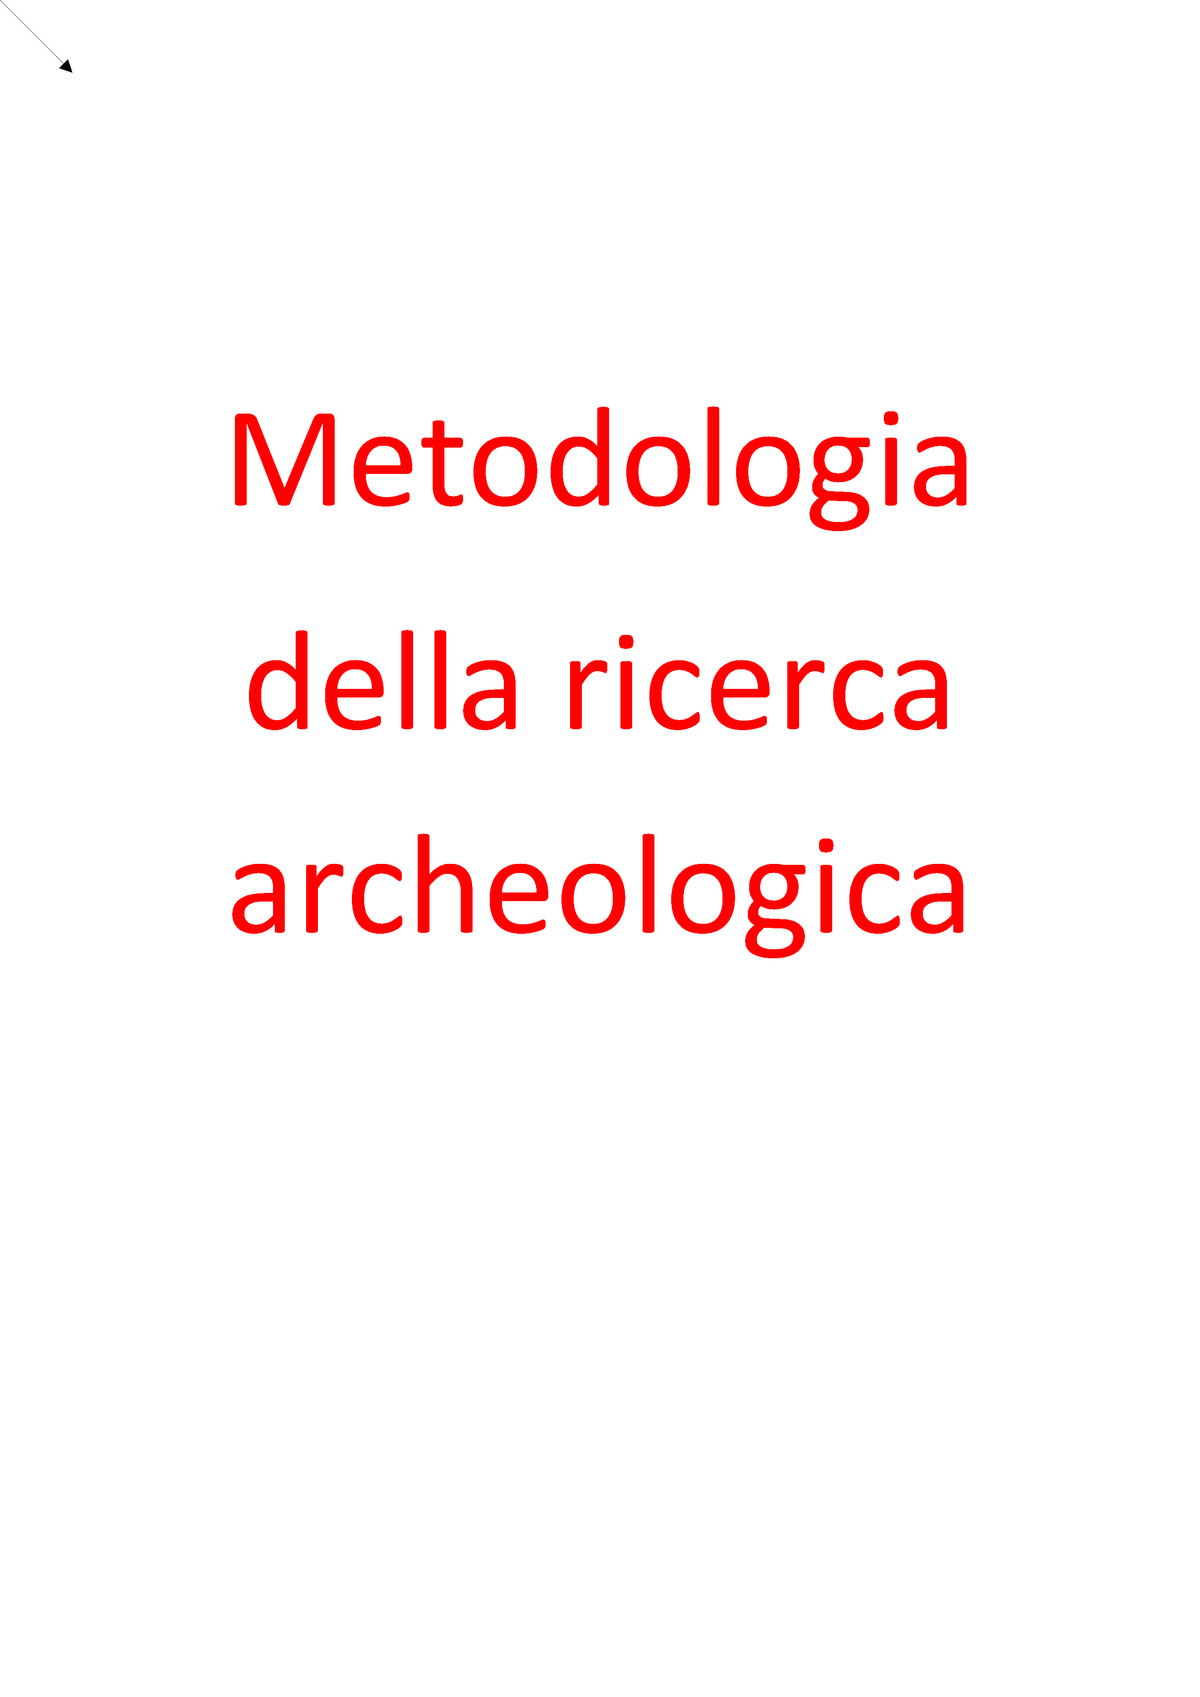 Relativa archeologia definizione di datazione